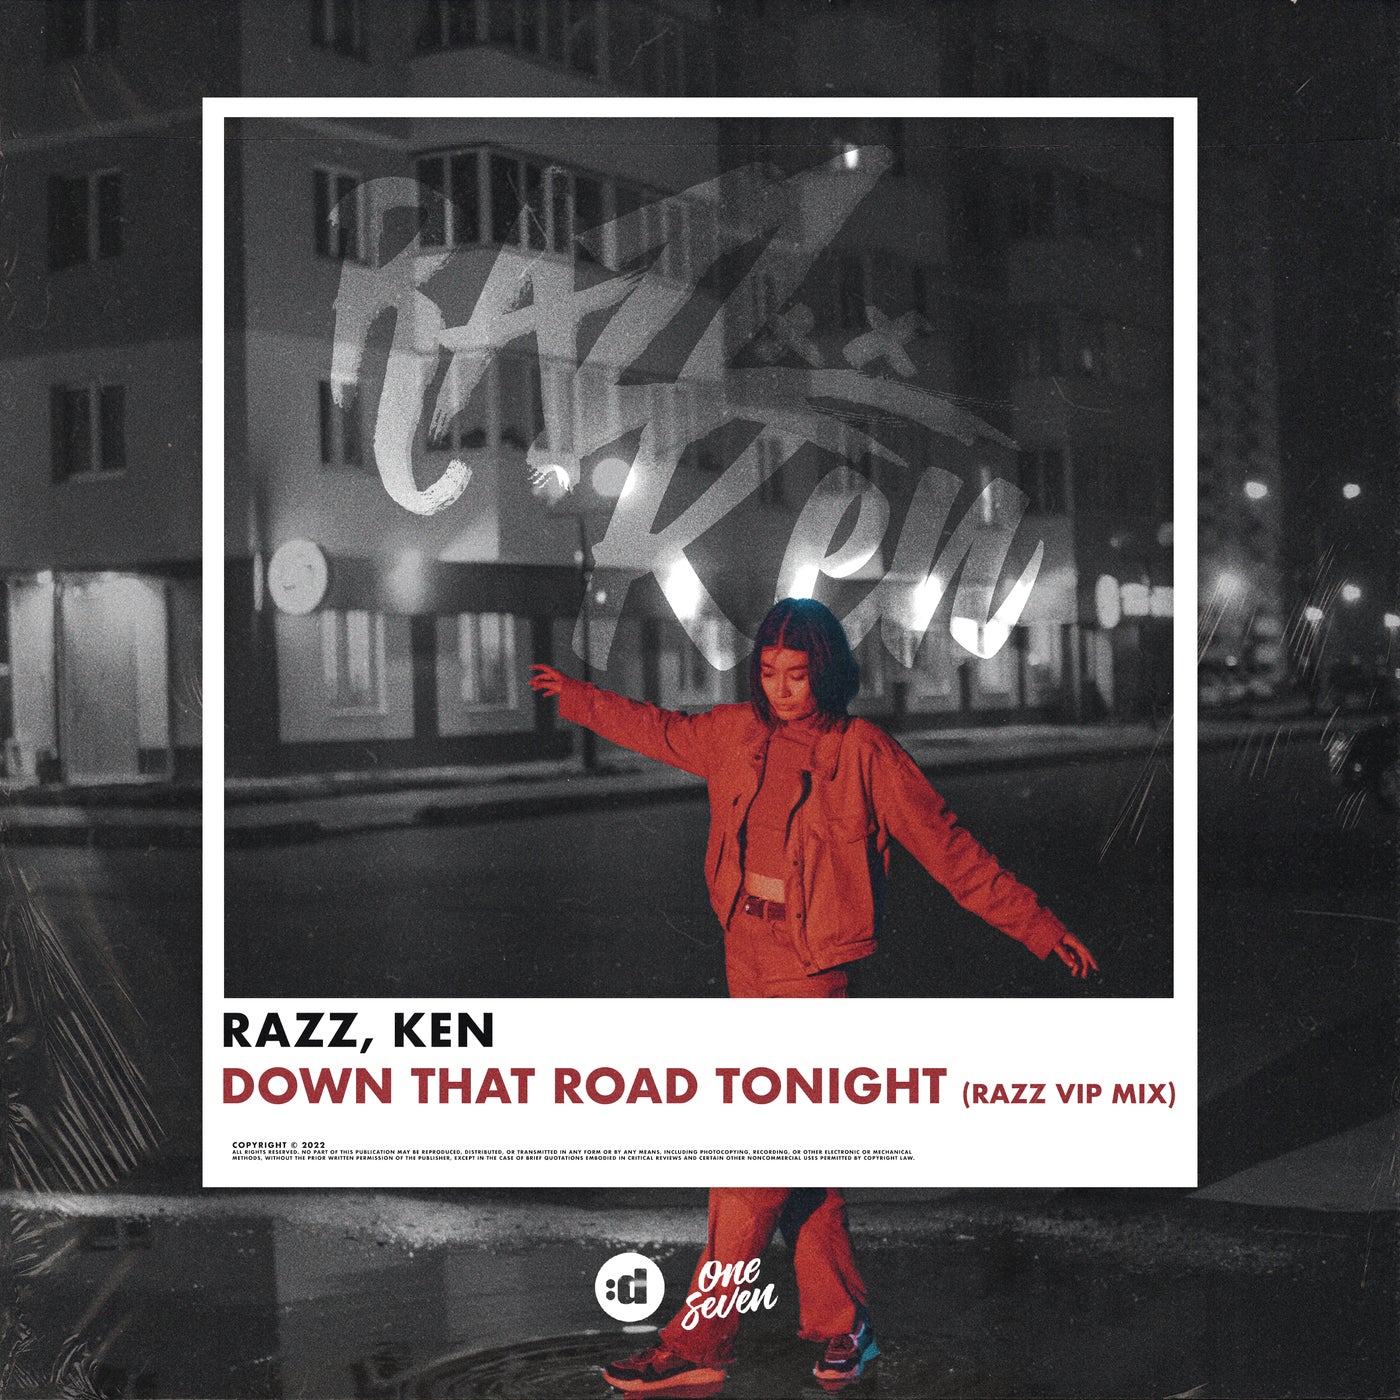 Down That Road Tonight (RAZZ VIP MIX)